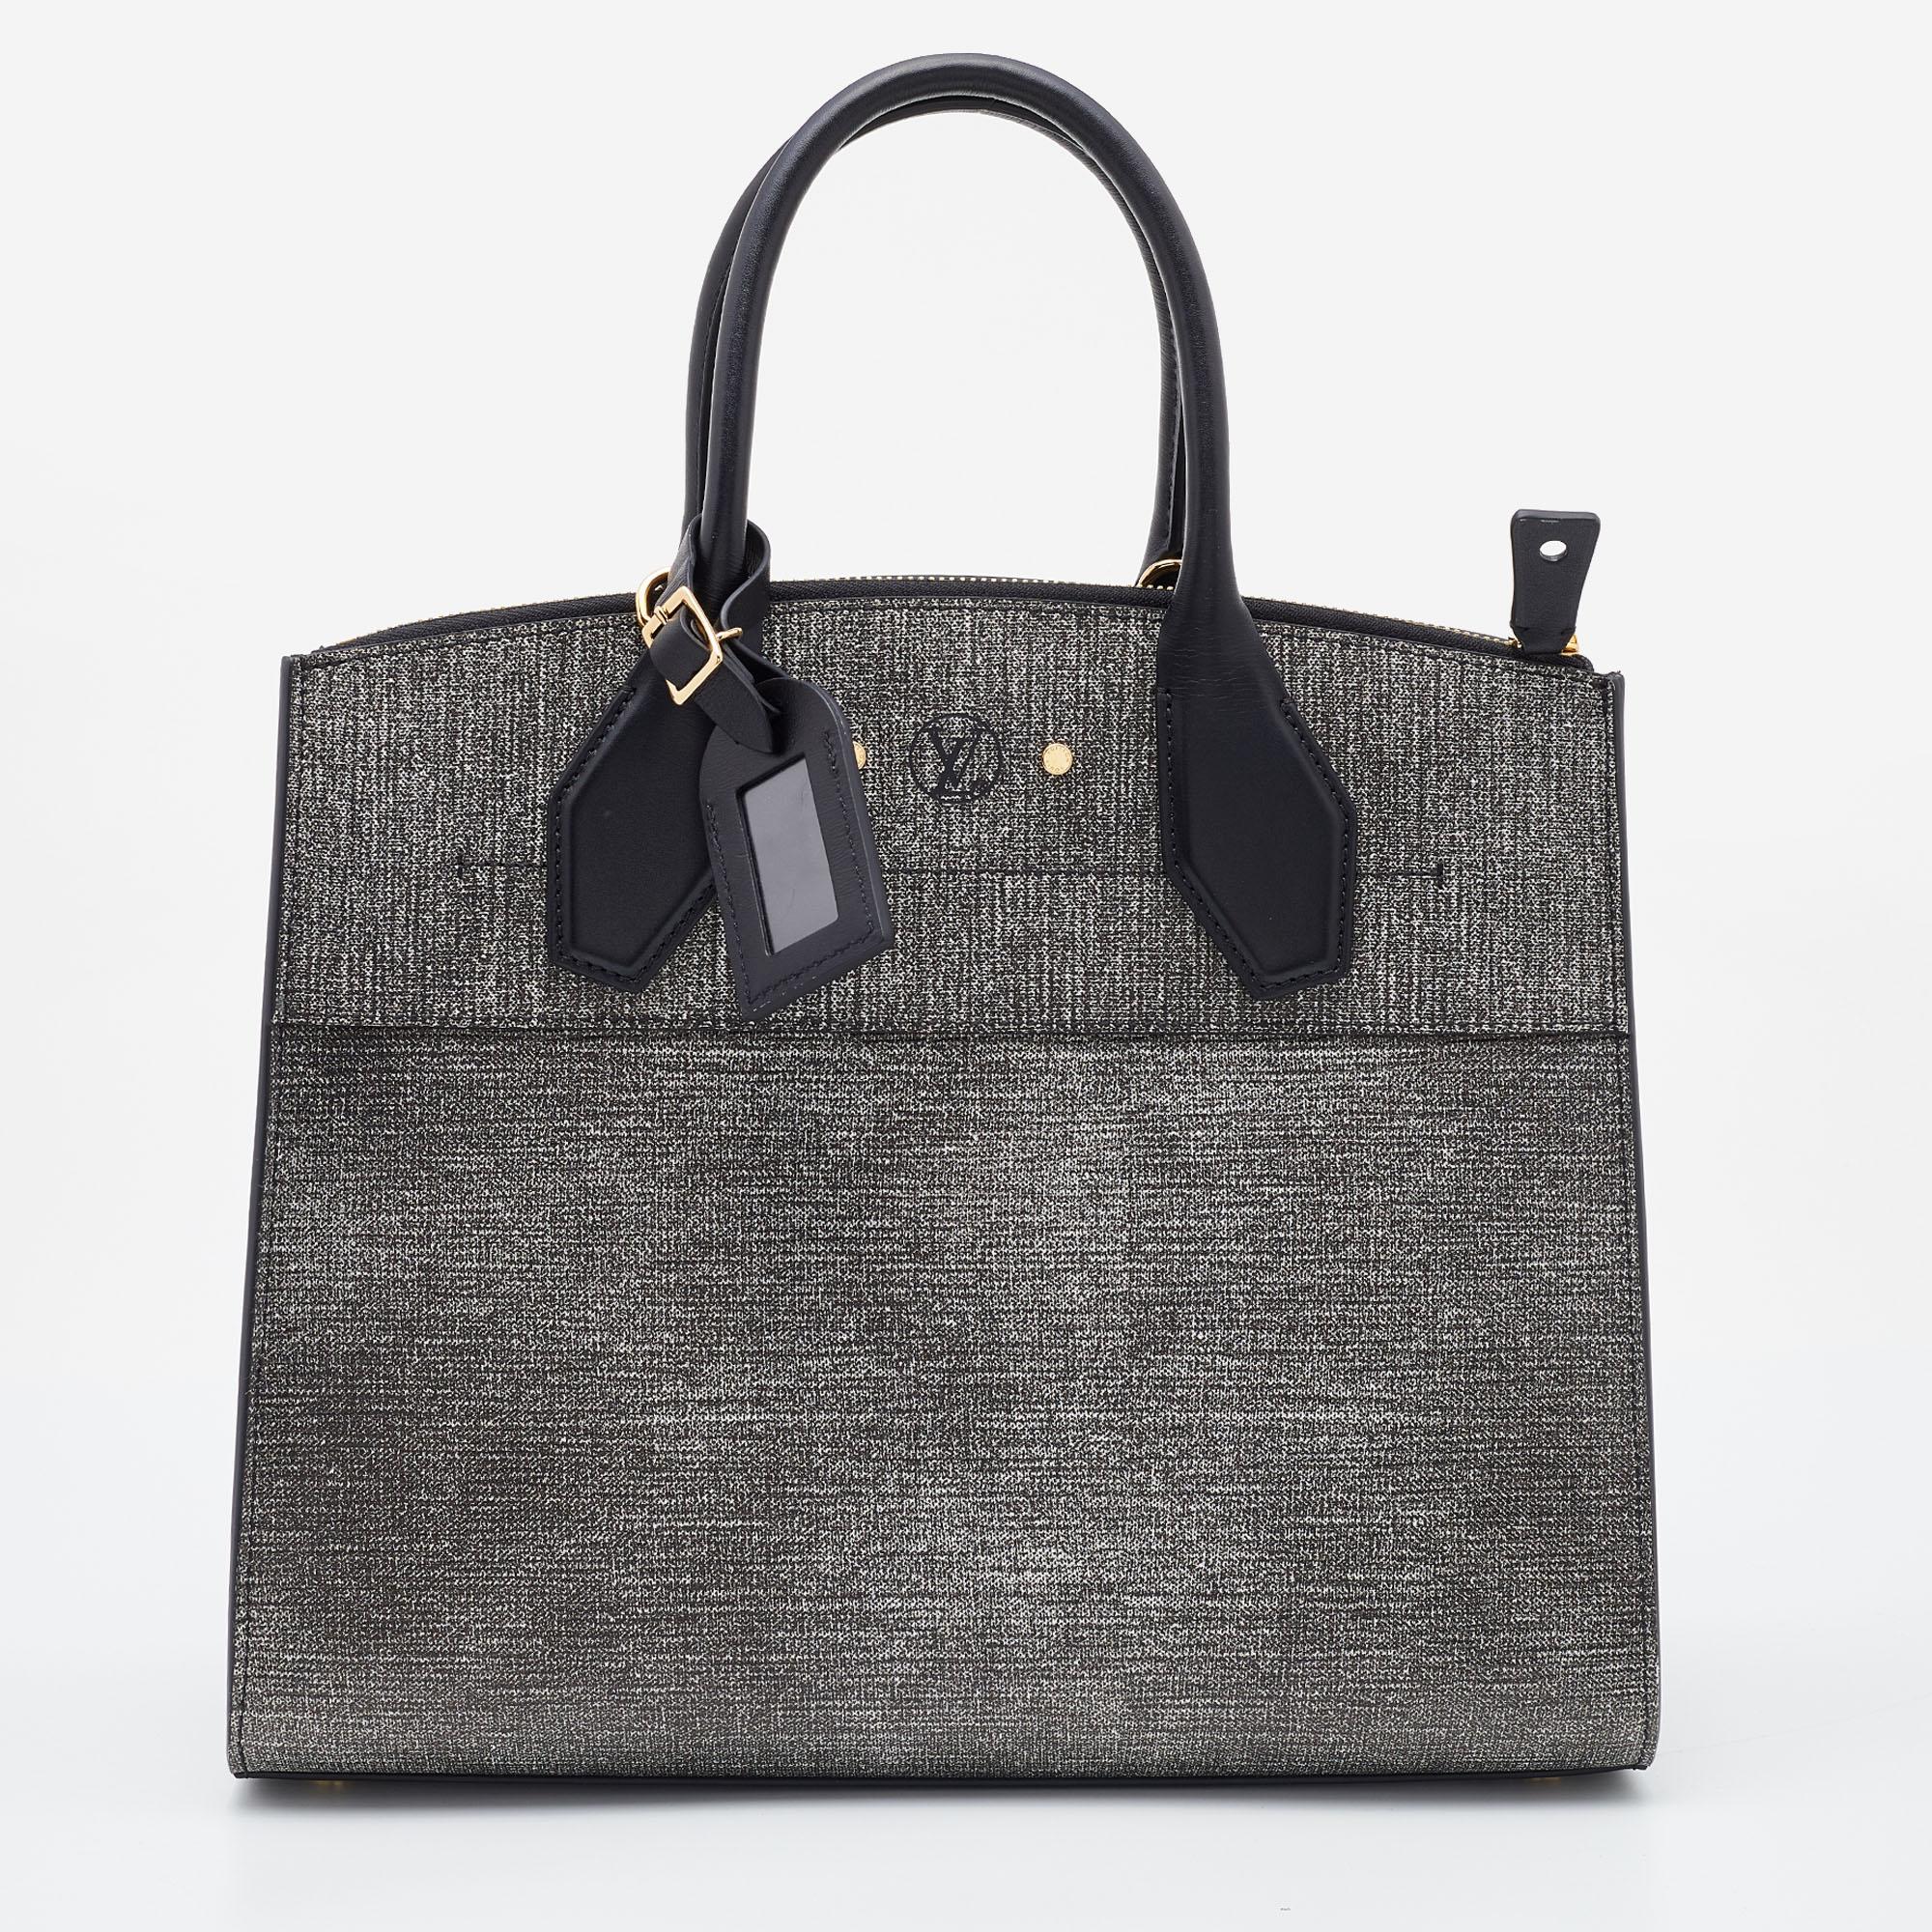 Die City Steamer MM-Tasche von Louis Vuitton ist eine gelungene Kombination aus Design und Funktionalität und erfreut sich weltweit großer Beliebtheit. Diese unwiderstehliche und stilvolle Tasche unterstreicht nicht nur Ihr tadelloses Styling,